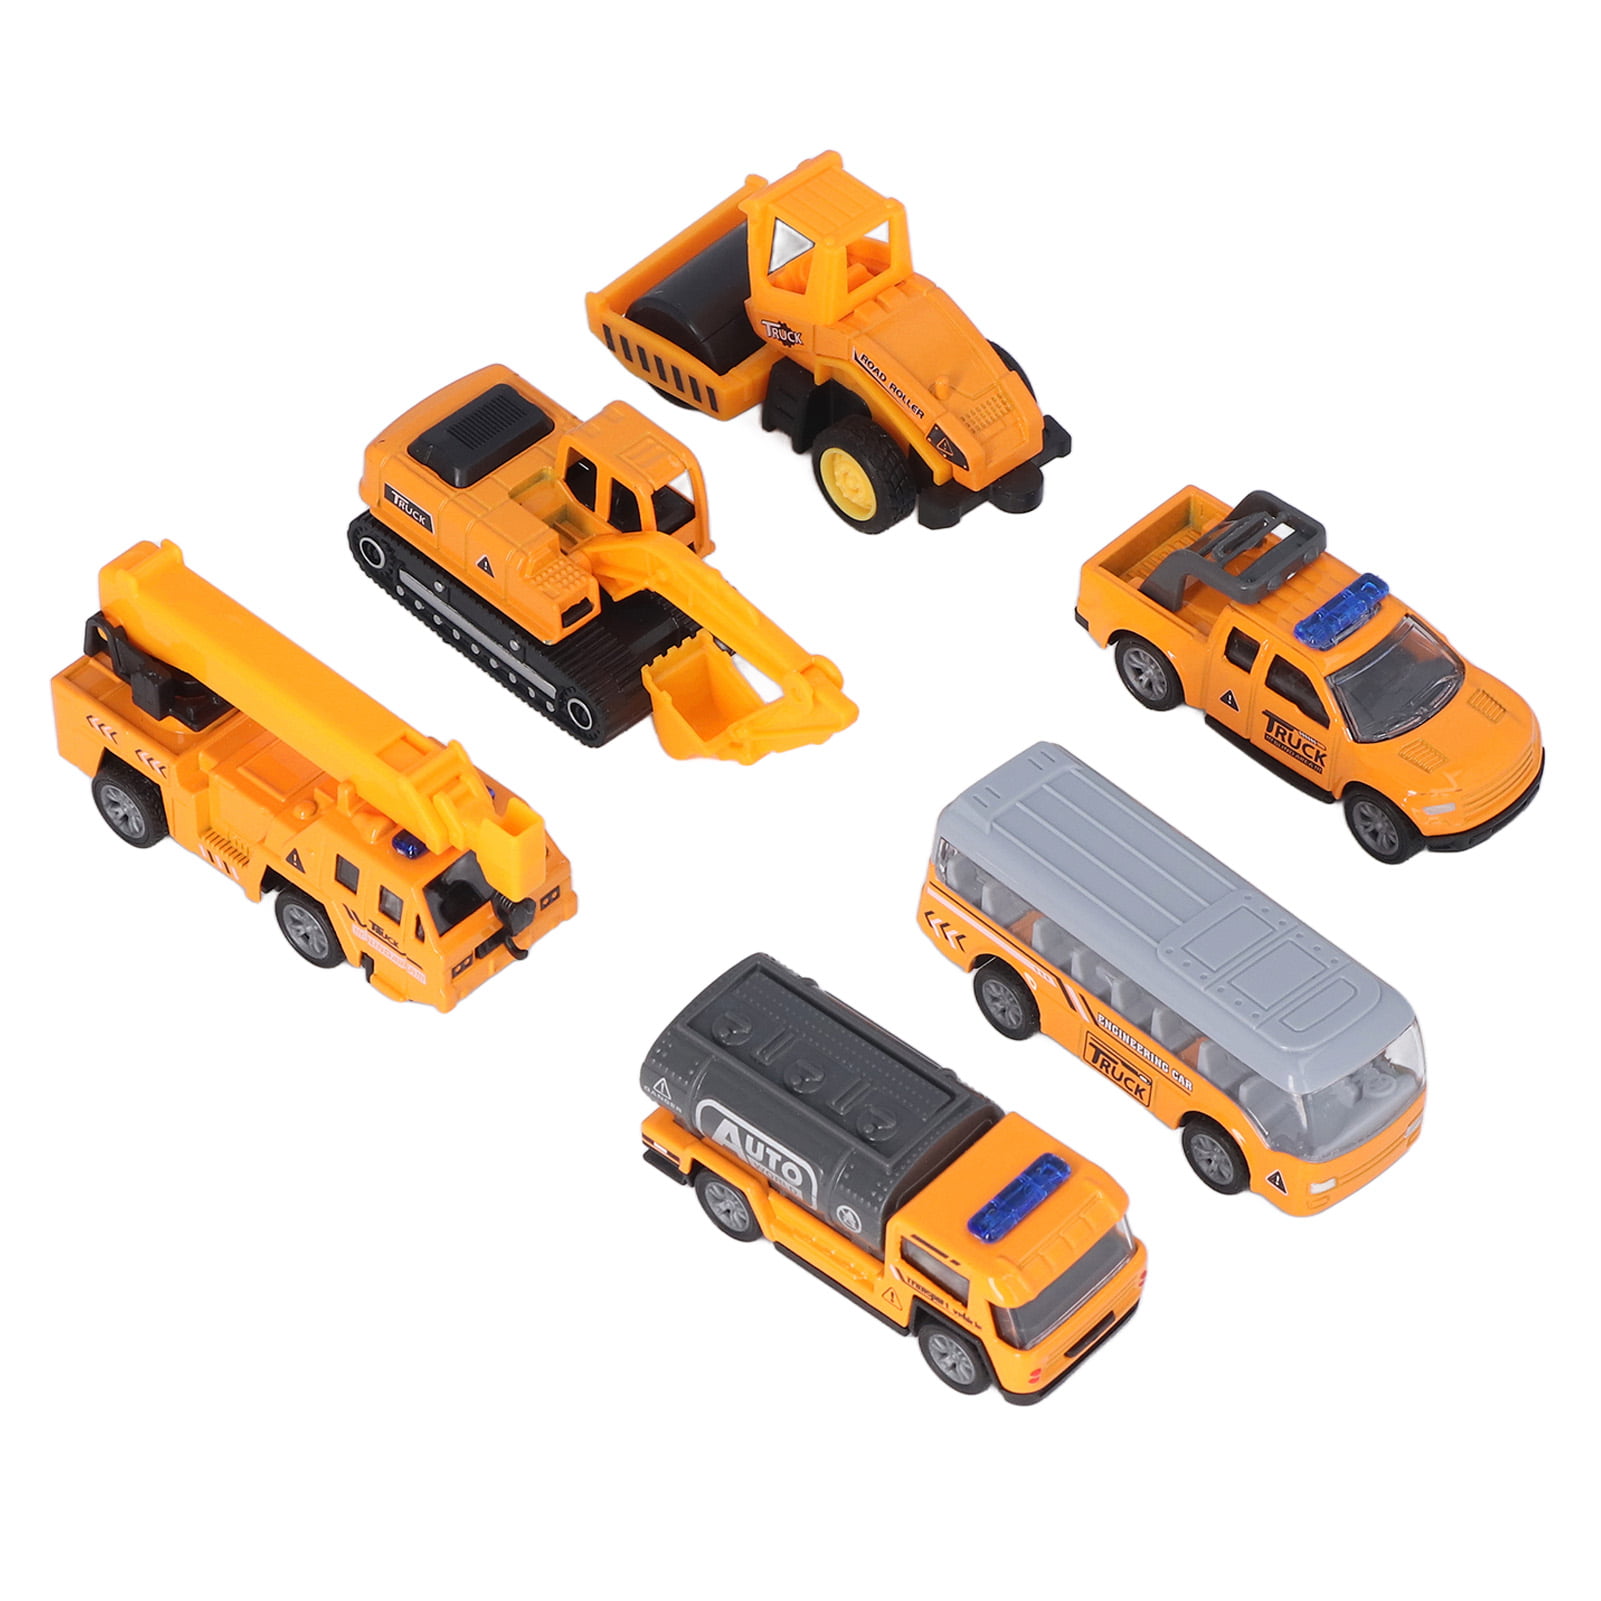 Esaierr Juegos De Carros Trucks Alloy Engineering Car Toy Set Boys